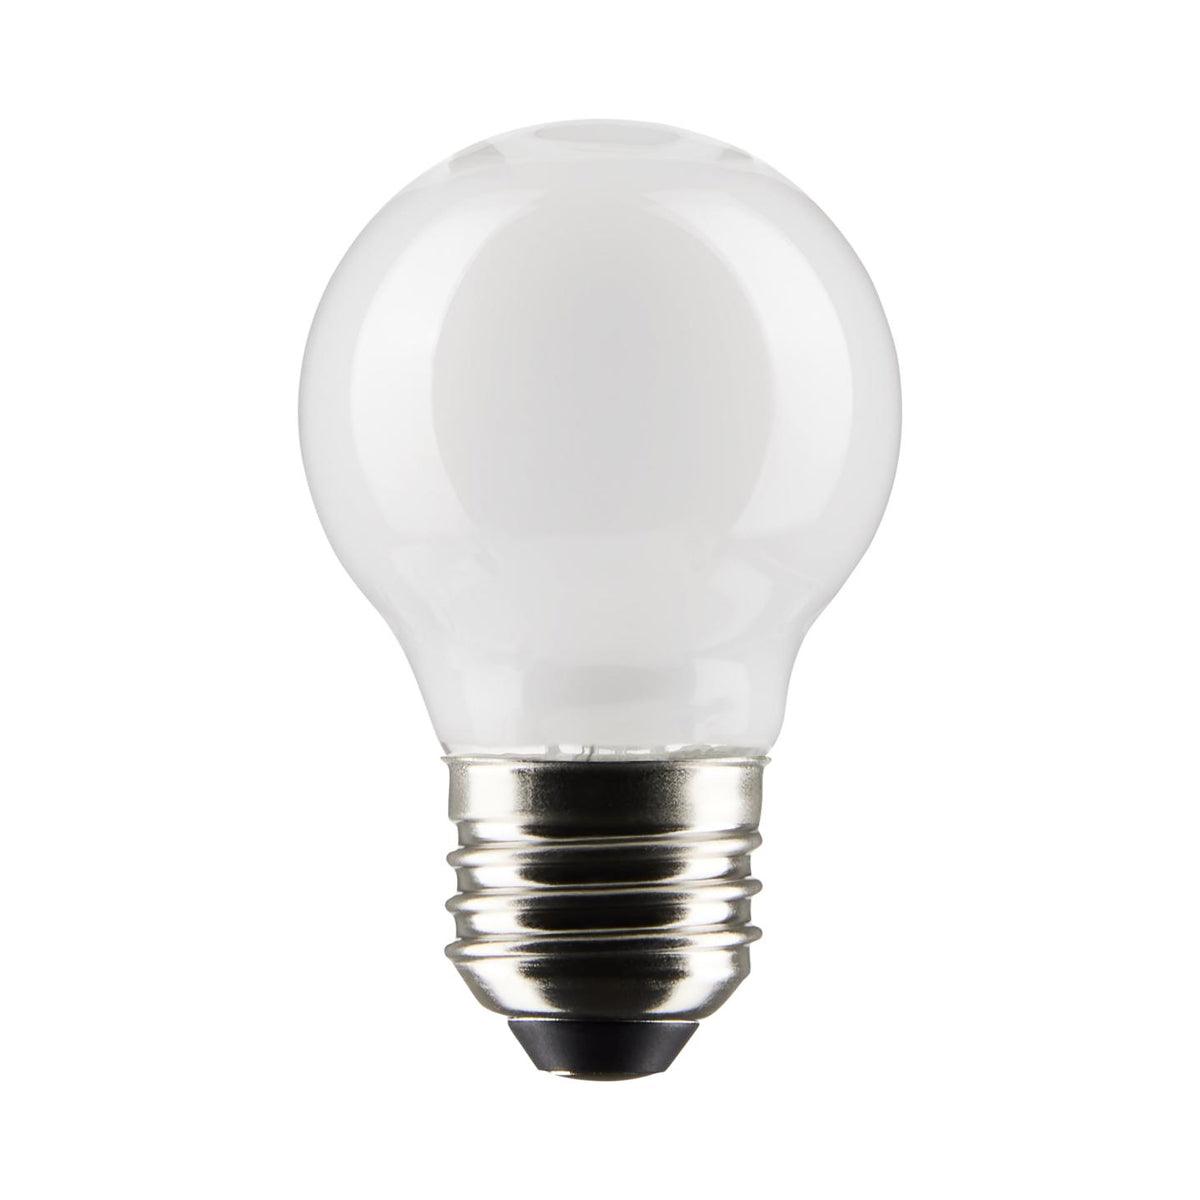 G16.5 LED Globe Bulb, 5 Watt, 350 Lumens, 2700K, E26 Medium Base, Frosted Finish, Pack Of 2 - Bees Lighting